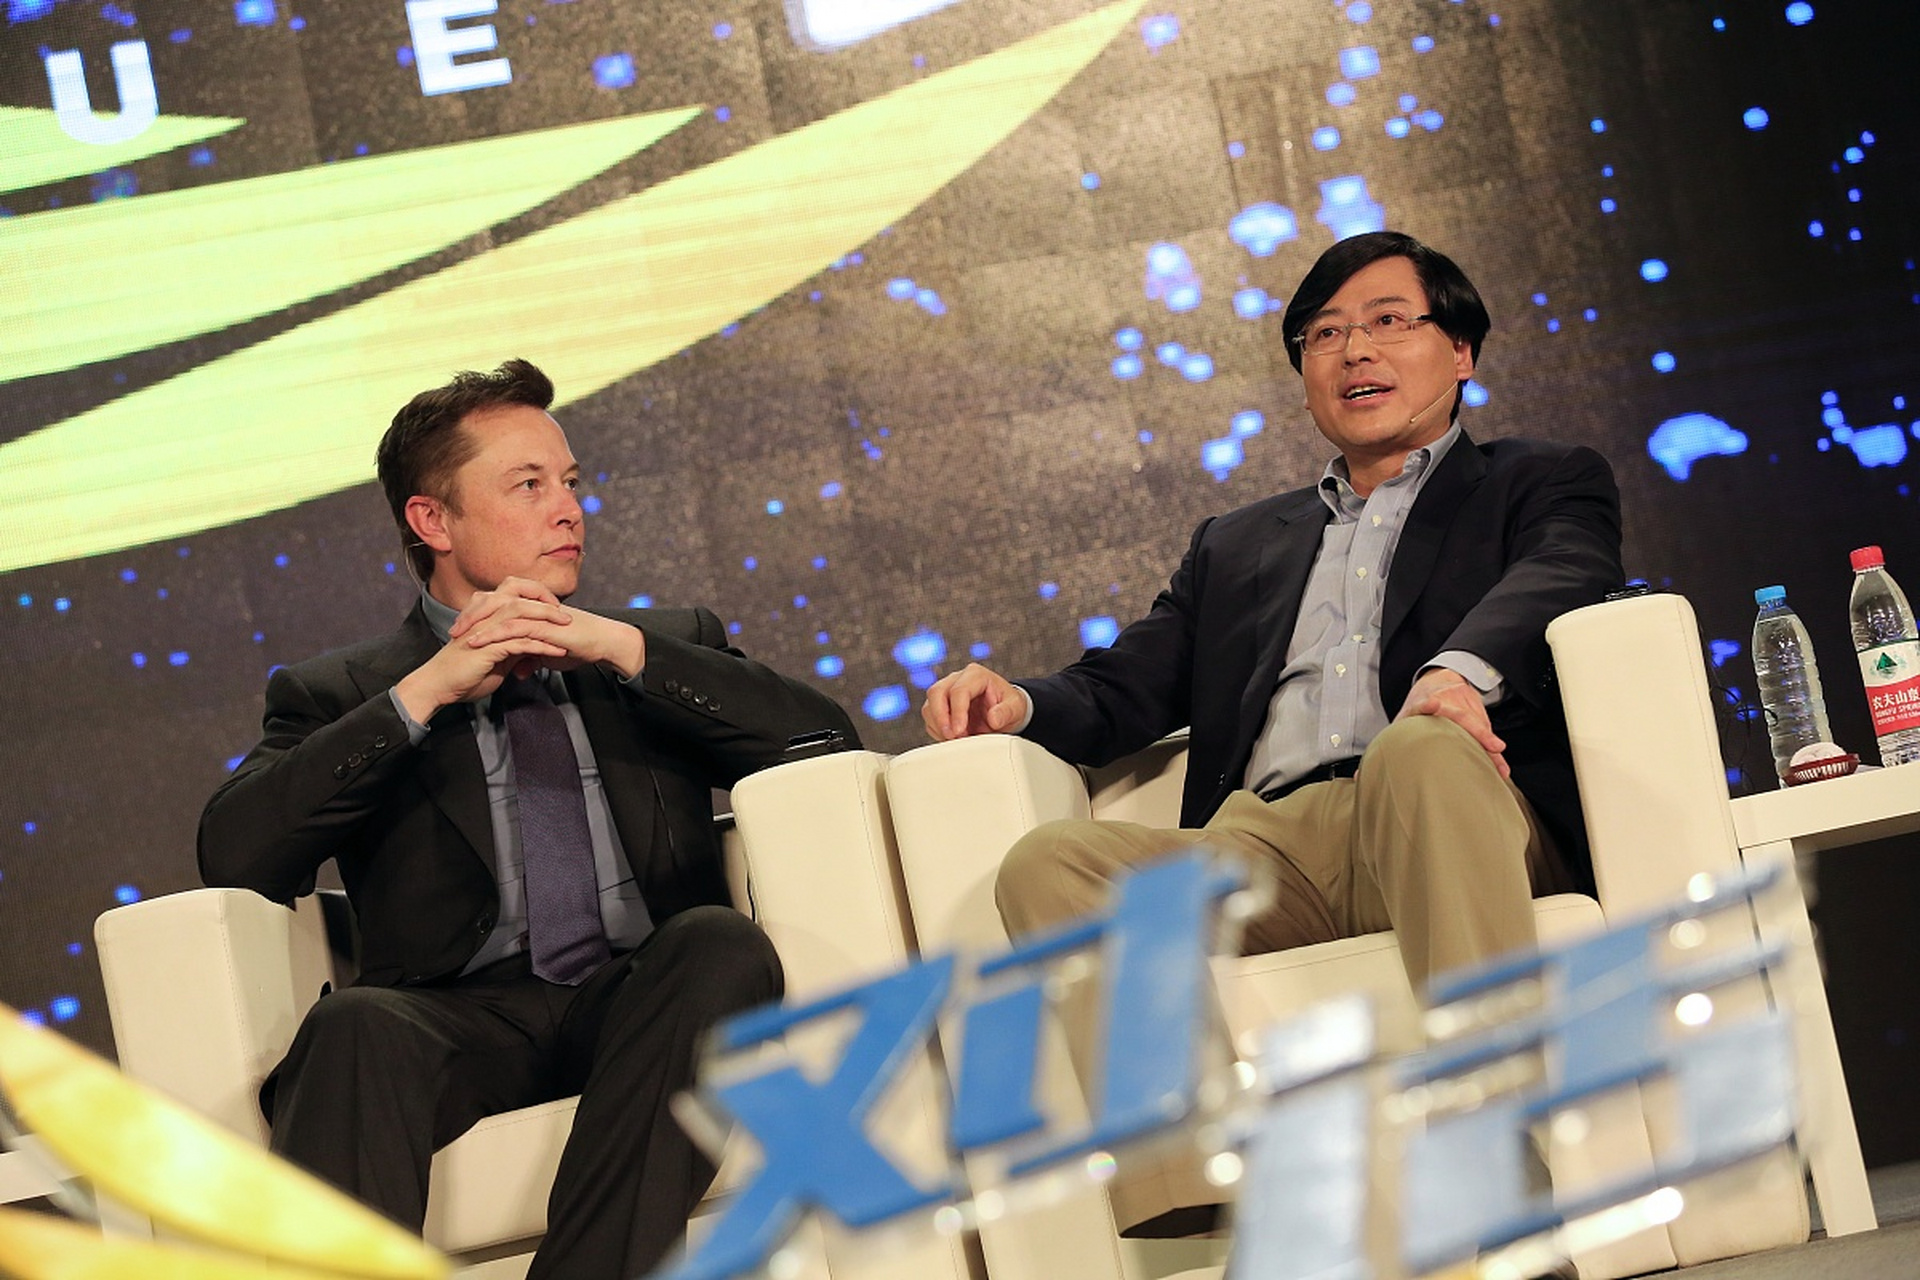 2014年,央视在节目中采访了马斯克和杨元庆